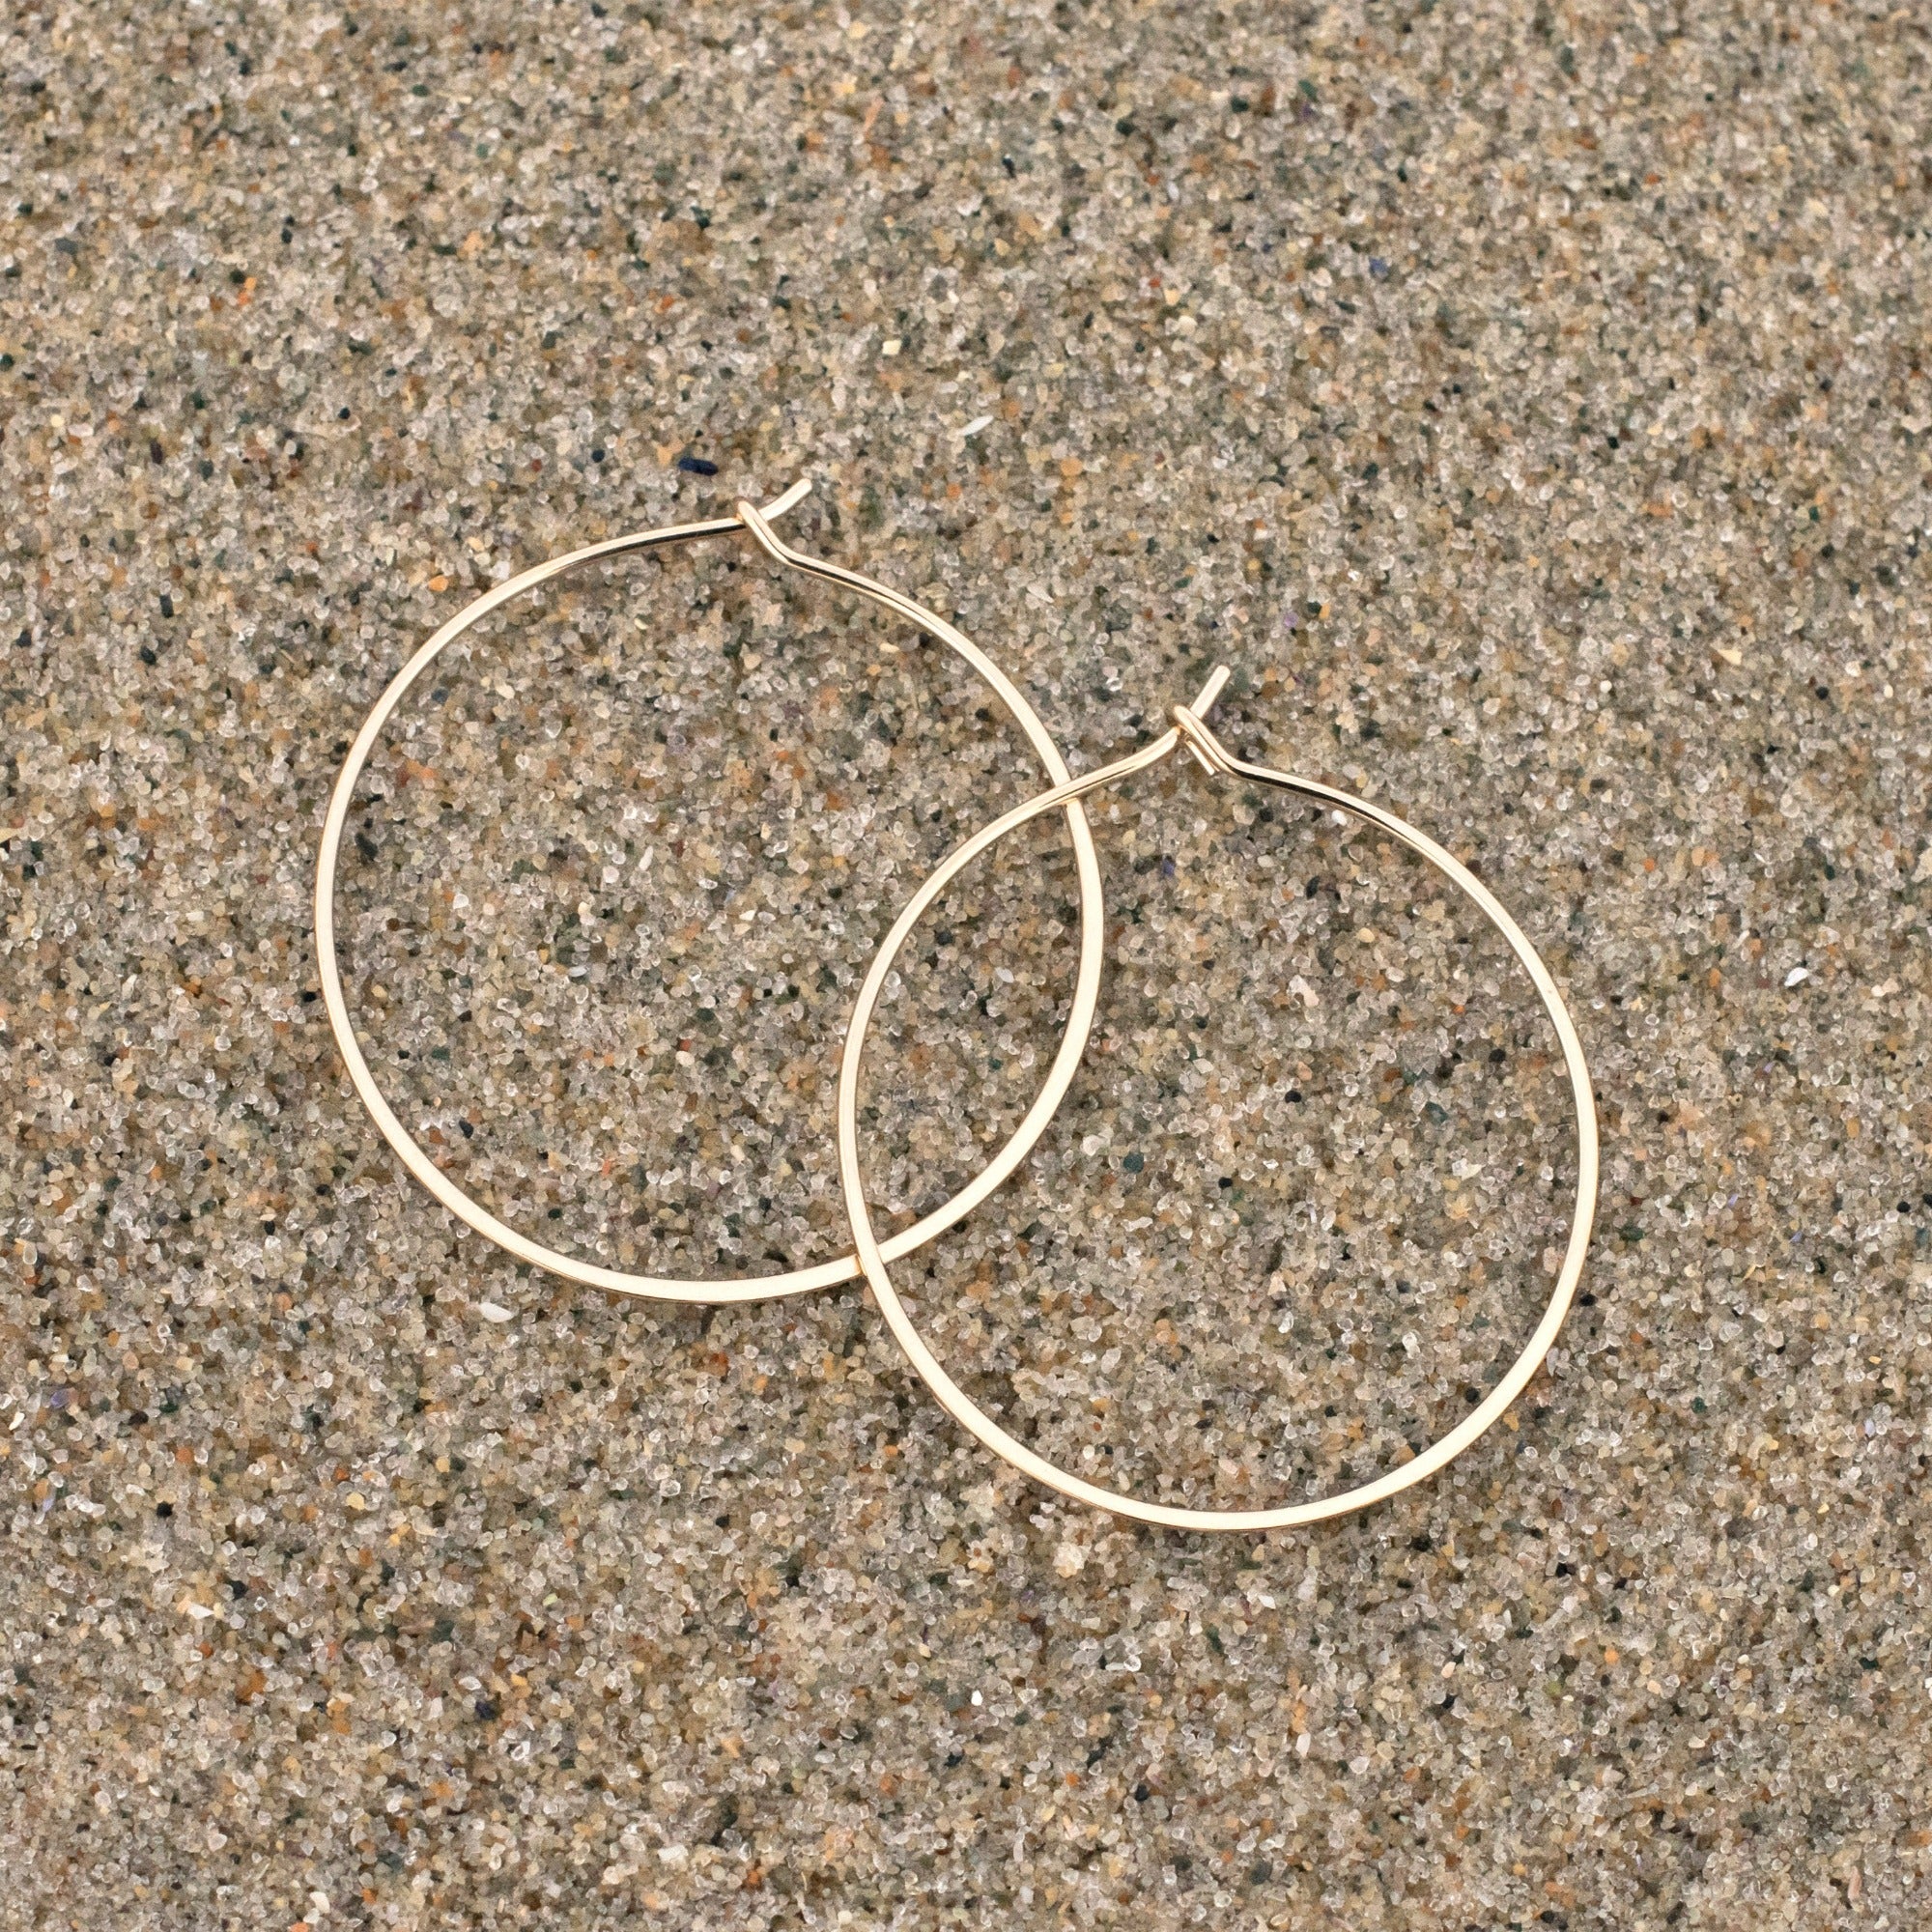 14k gold fill 1.25" hoop earrings on sand